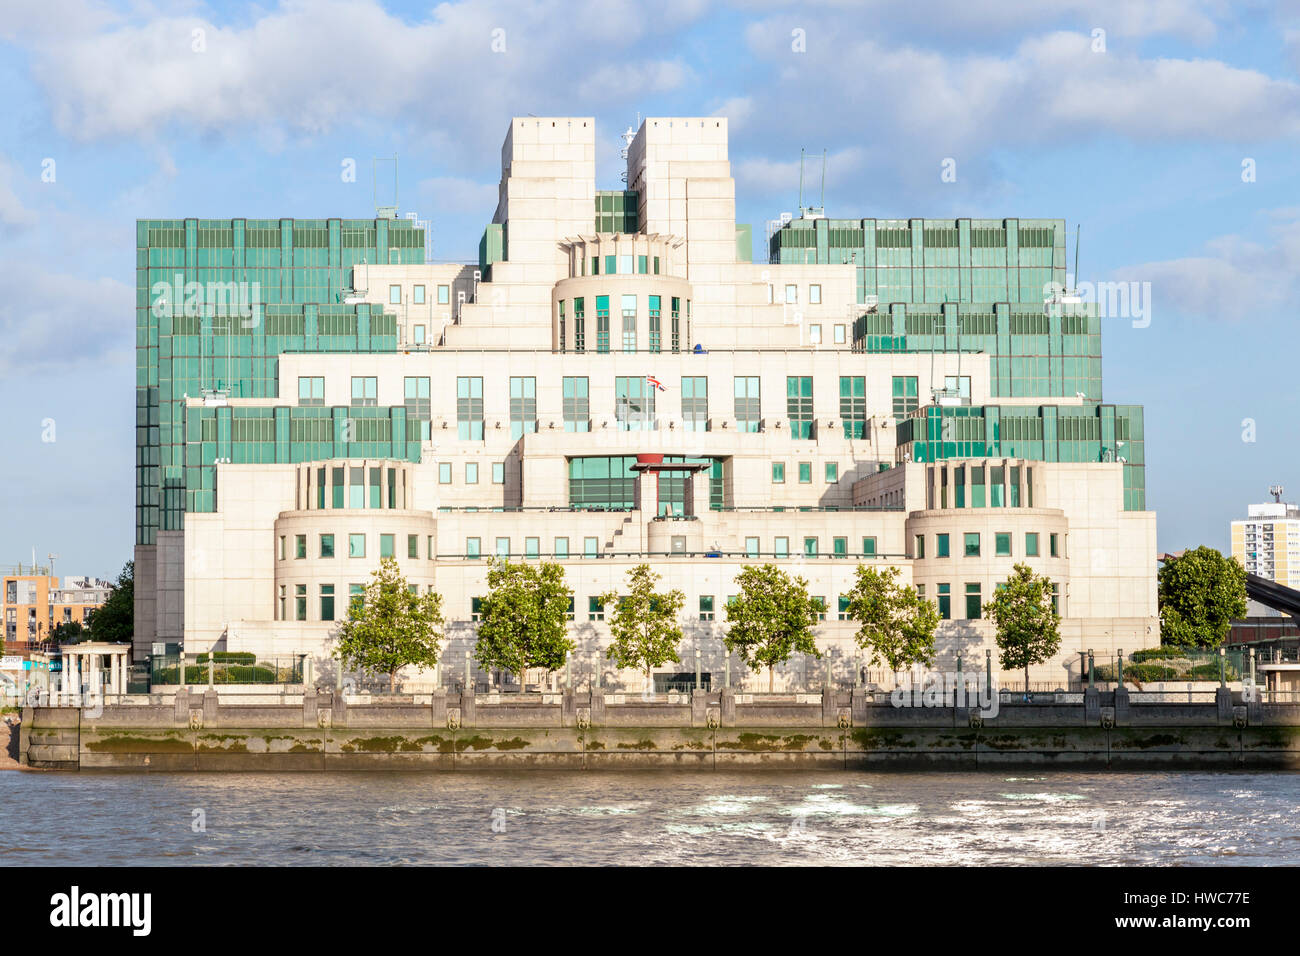 MI6-Gebäude. Britischen Geheimdienst Hauptquartier, SIS, bei Vauxhall Cross, London, England, Großbritannien Stockfoto